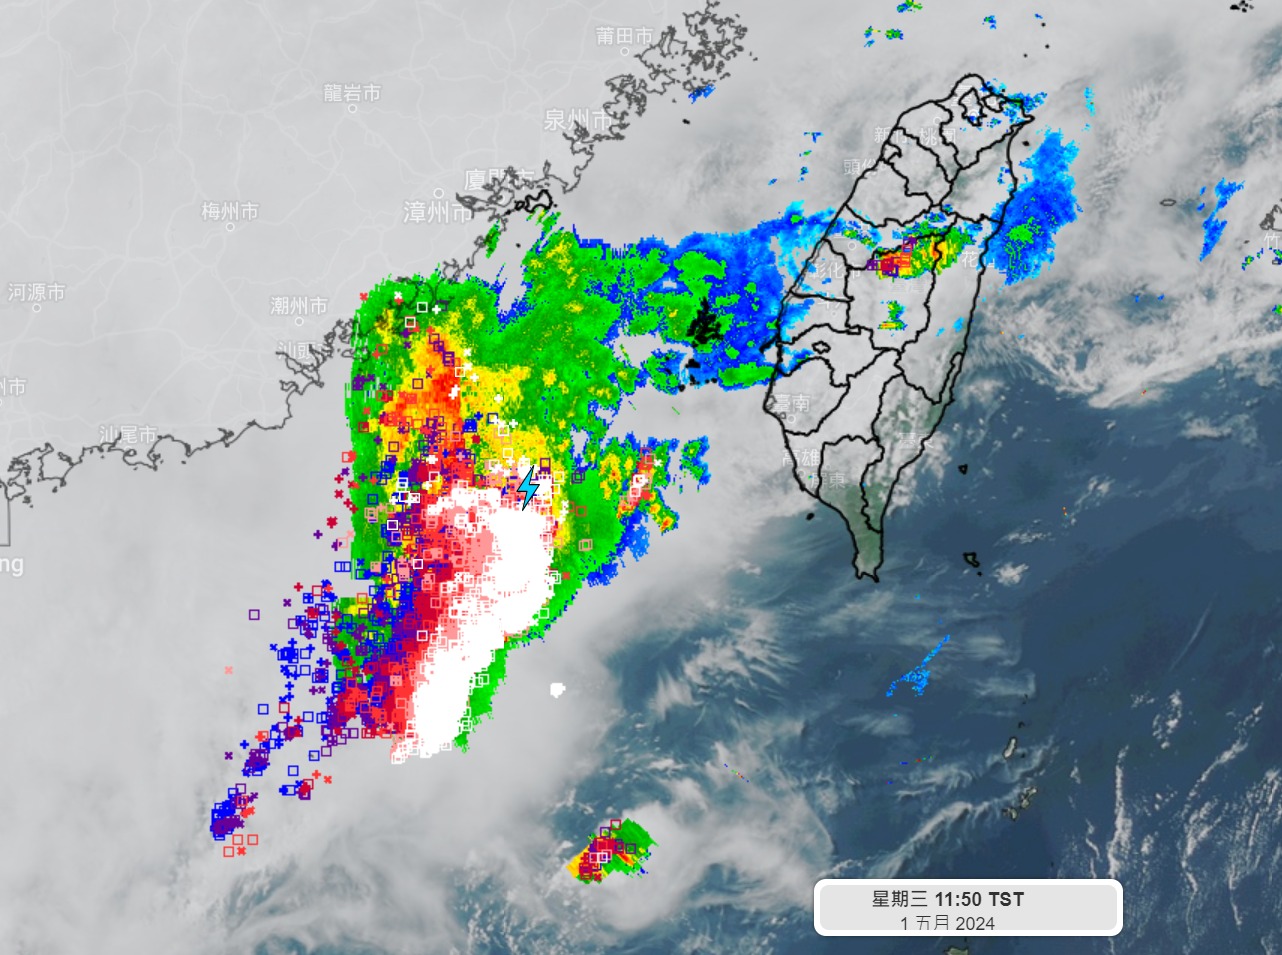 目前在台湾海峡南部有一条「线状对流」发展中，闪电讯号非常活跃，高达每分钟600次以上。图／取自「天气风险 WeatherRisk」脸书粉专